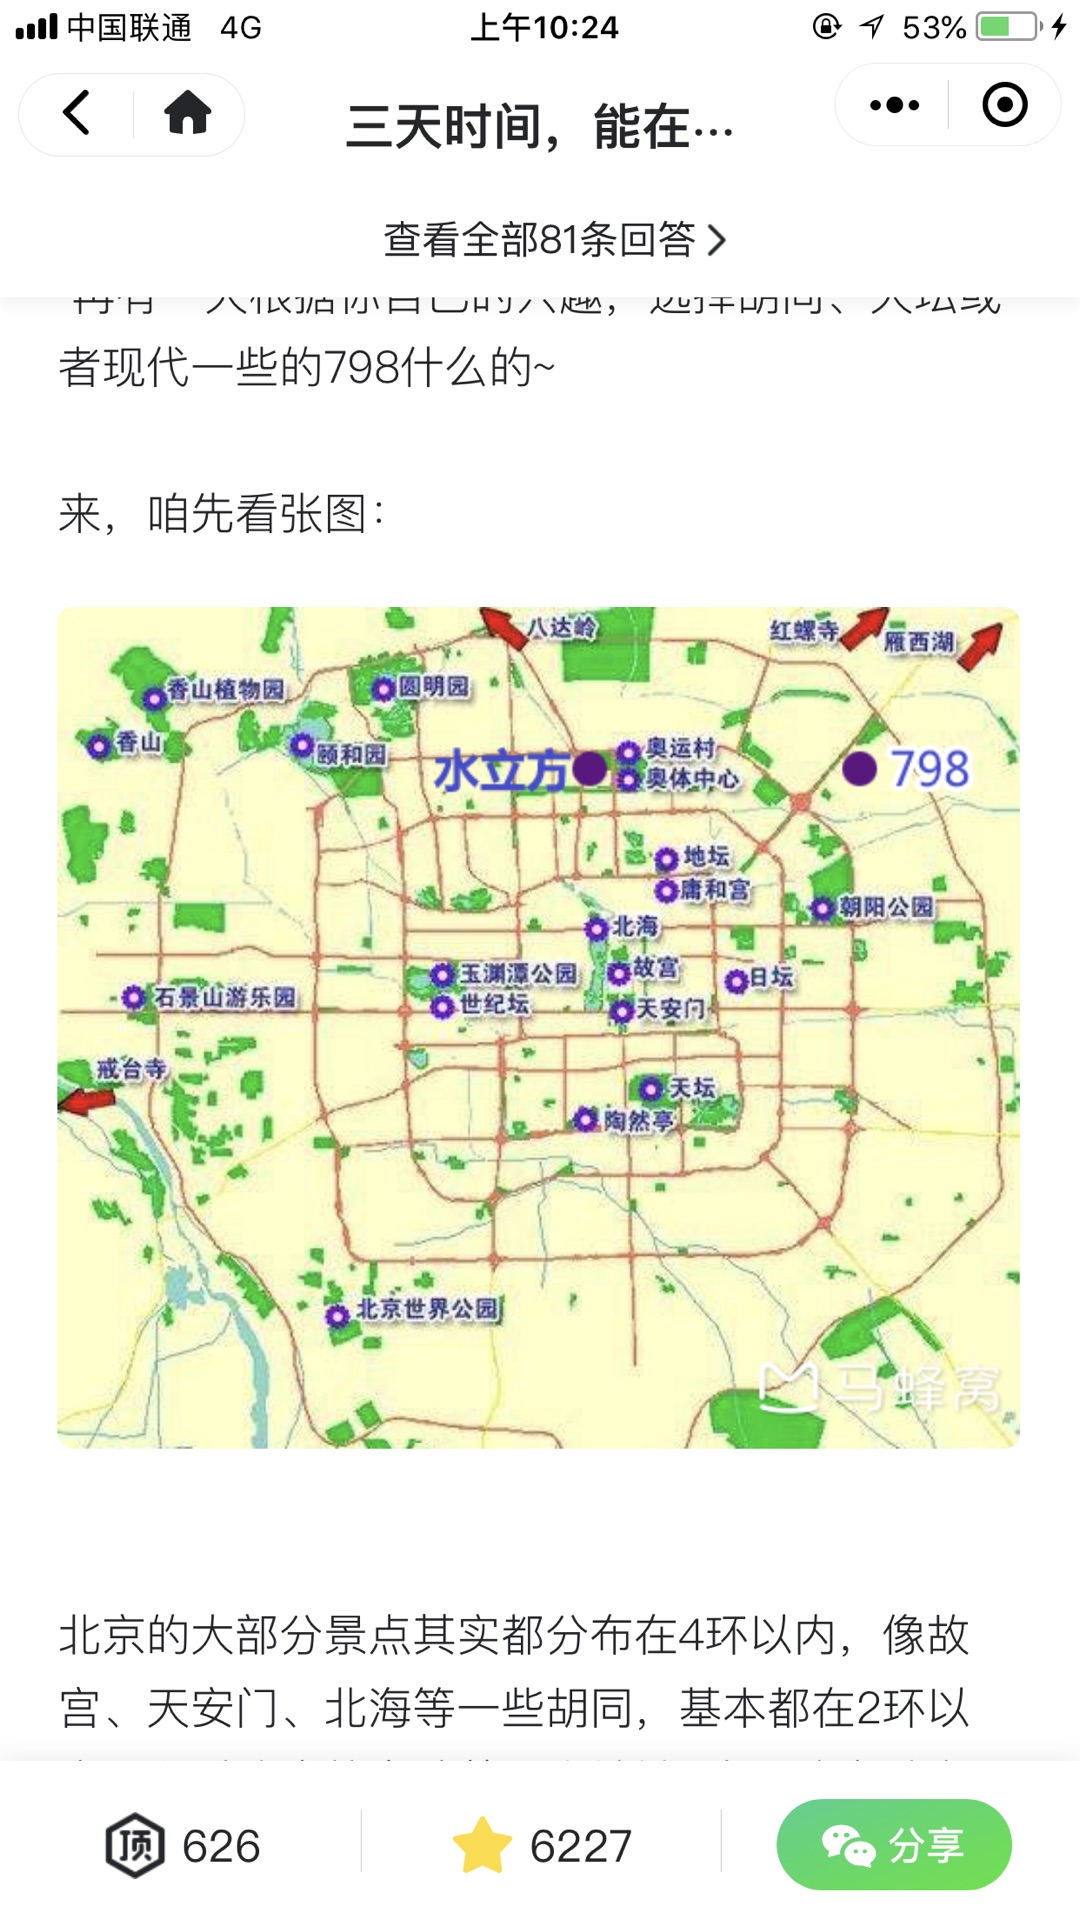 北京各大景点地图      